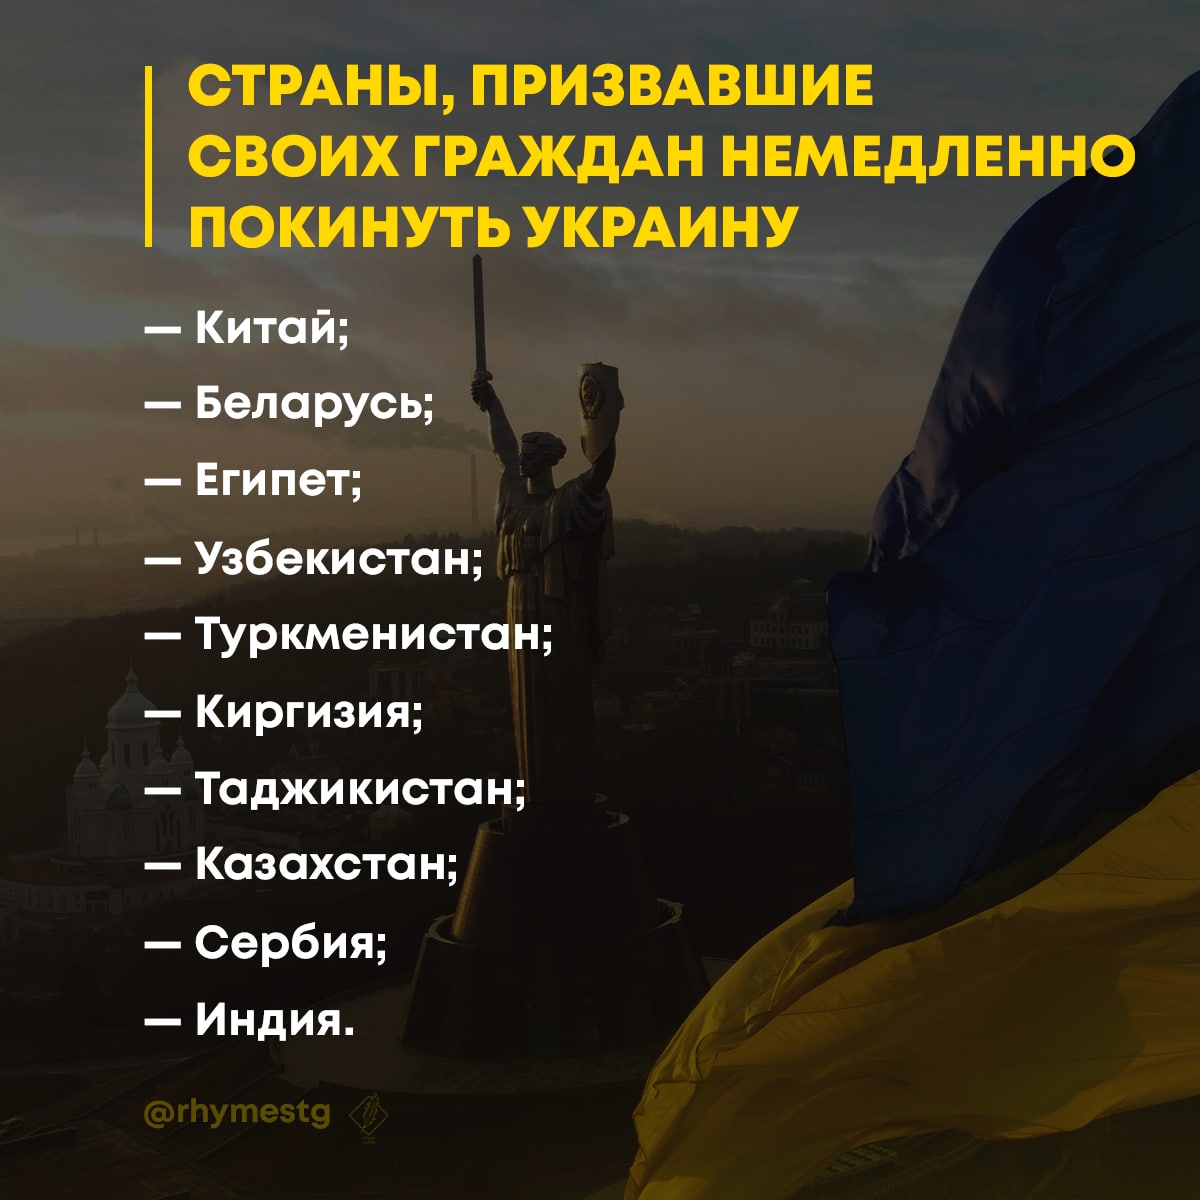 Сша рекомендовали своим гражданам покинуть россию. 35 Стран рекомендовали своим гражданам покинуть Украину.